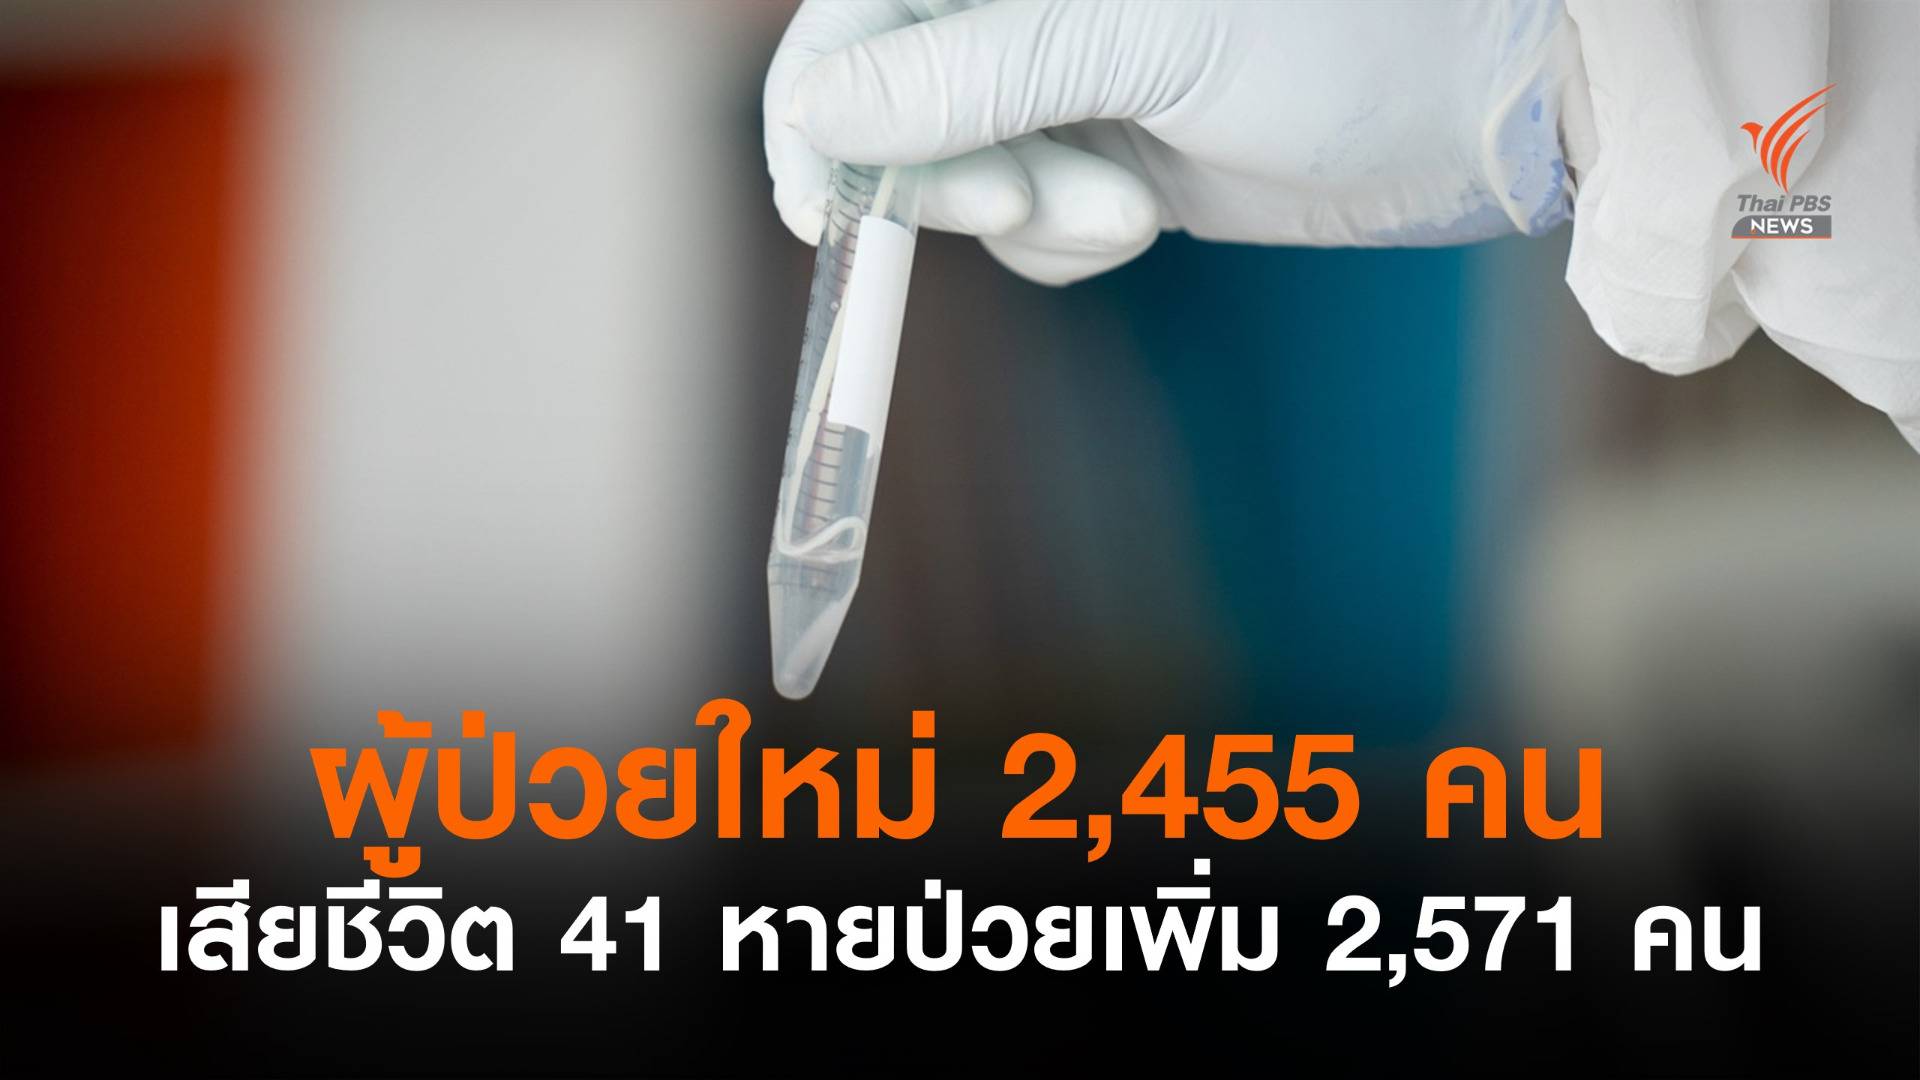 ไทยพบป่วยใหม่อีก 2,455 เสียชีวิต 41 หายป่วยเพิ่ม 2,571 คน